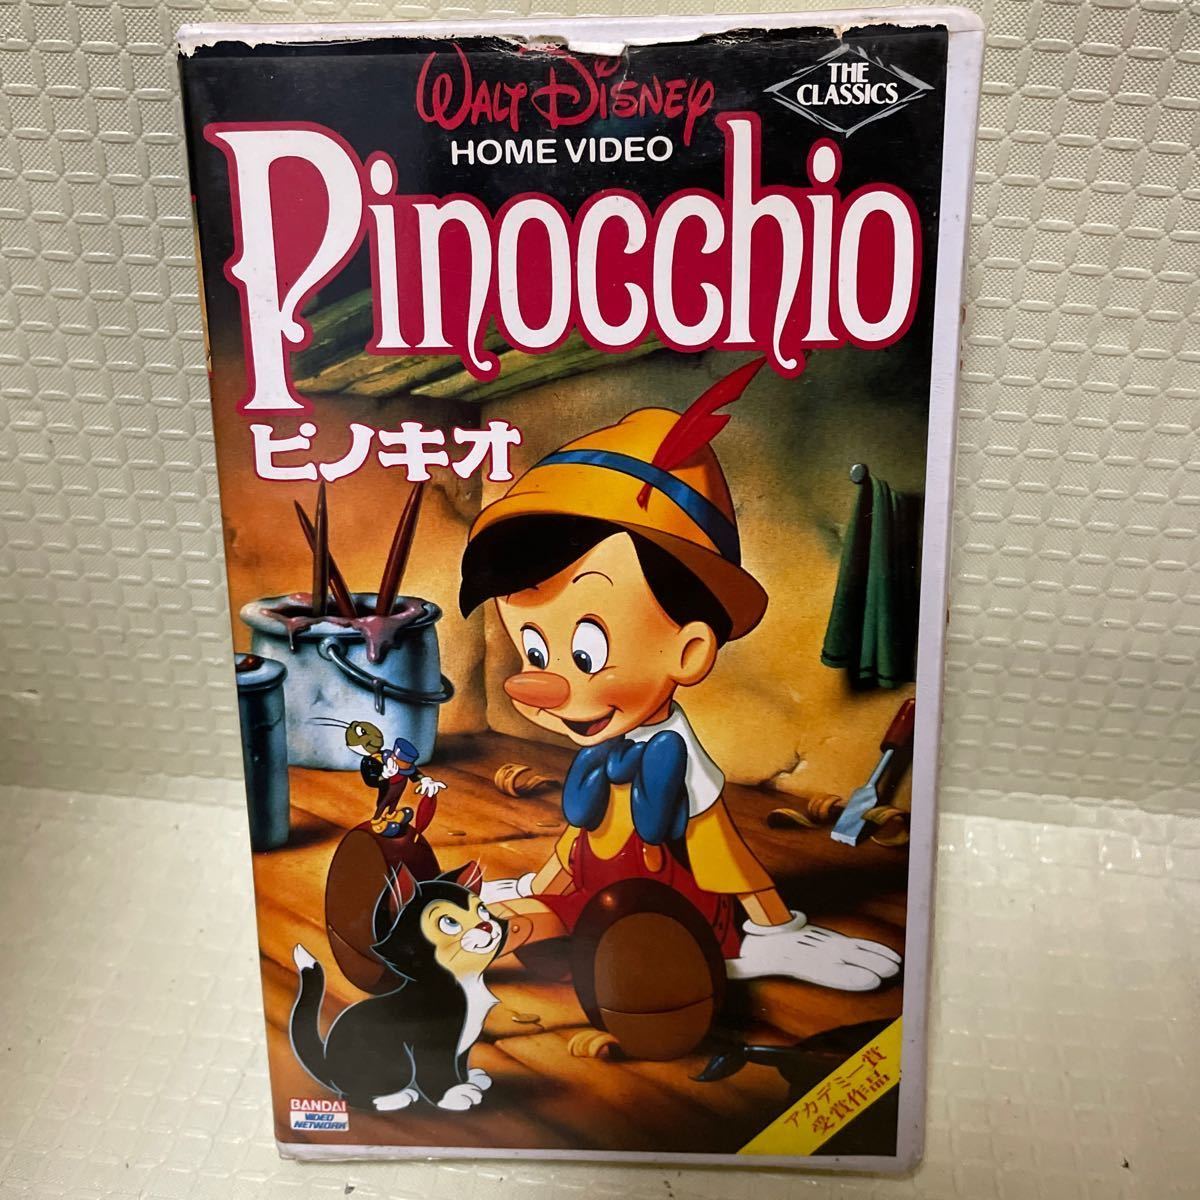 VHS ...  японский язык ... замена   издание   Bandai  Дисней   мультипликация 　...　Walt Disney BANDAI visual ...DVD ...